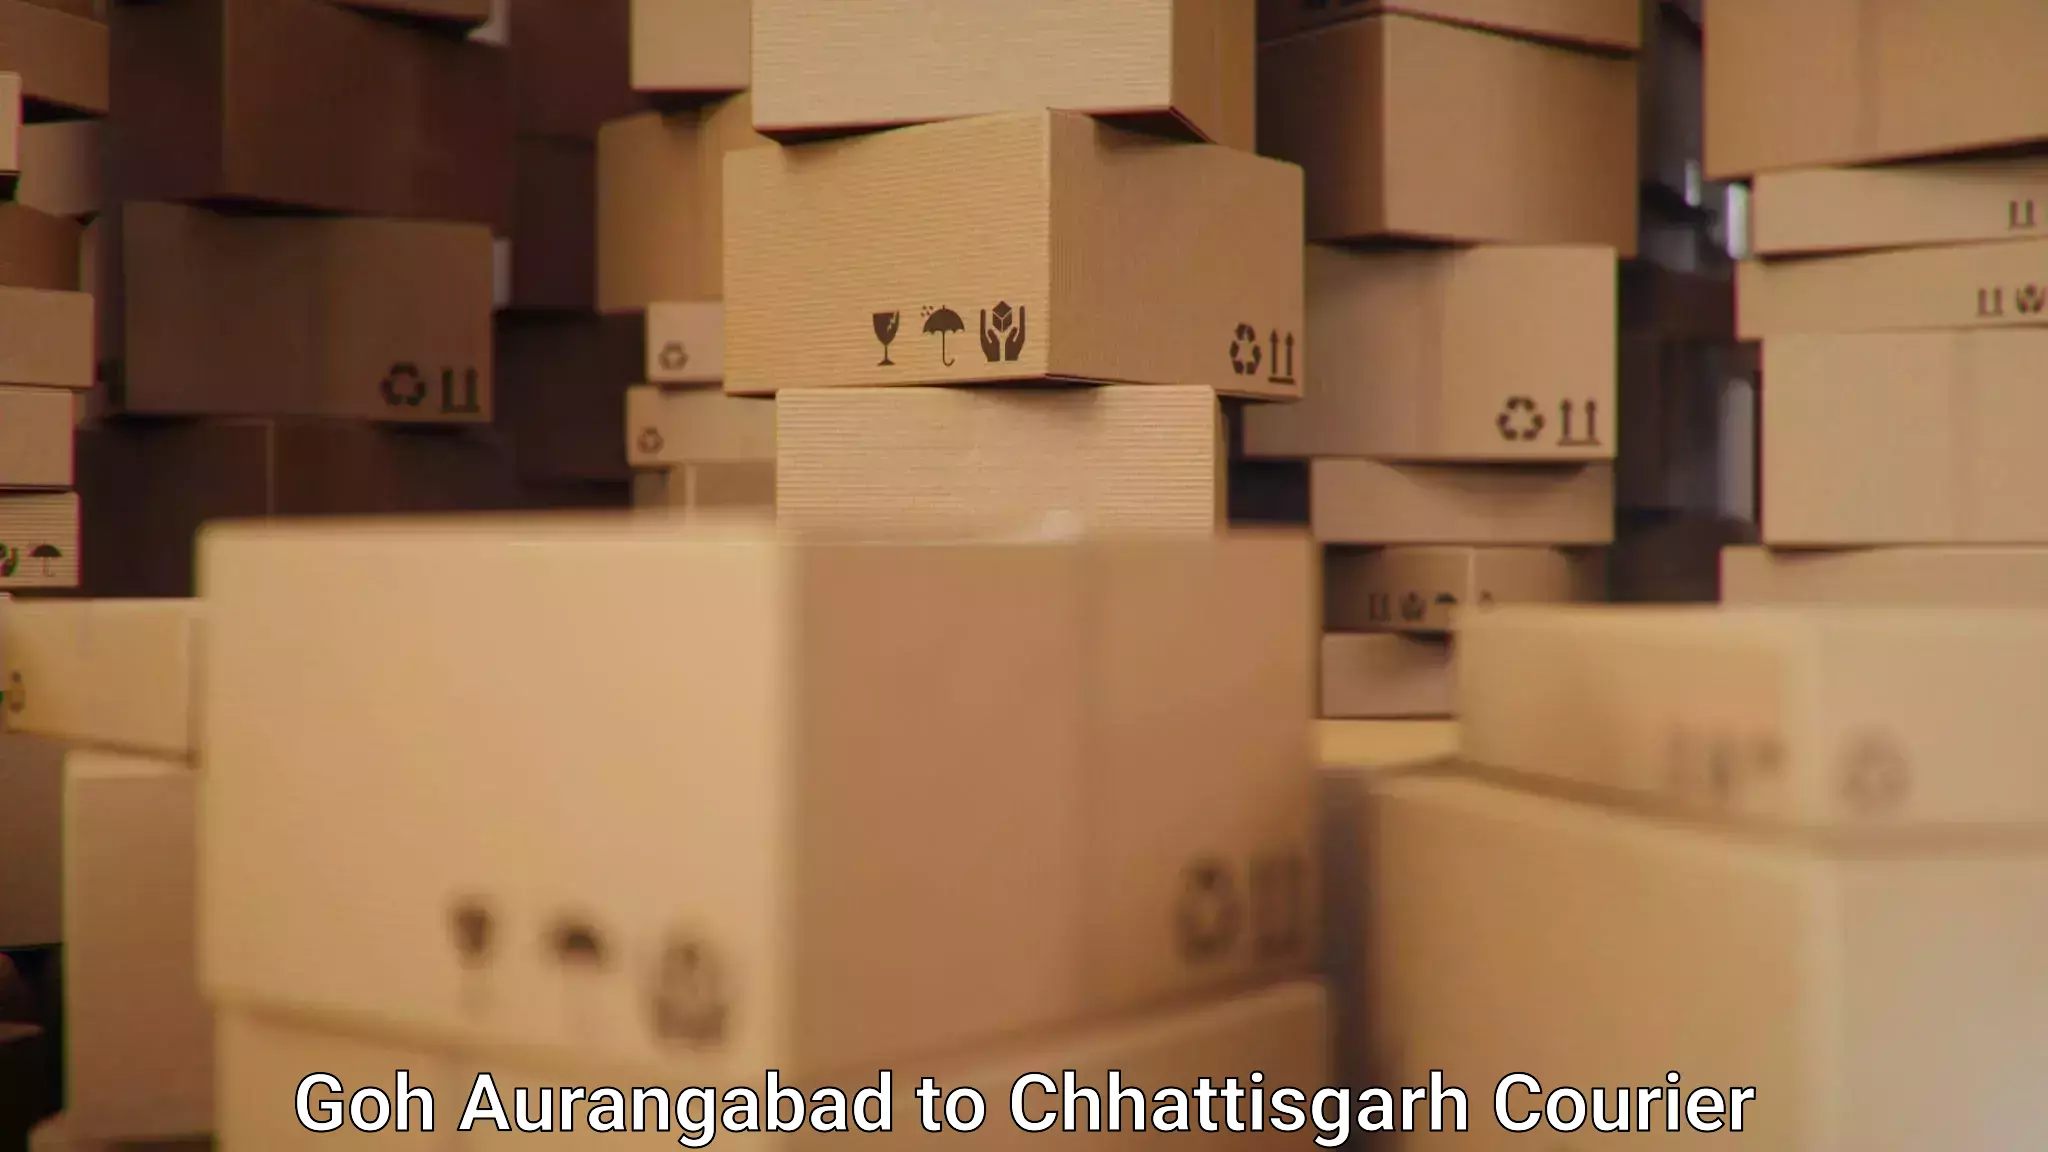 Tracking updates Goh Aurangabad to Chhattisgarh